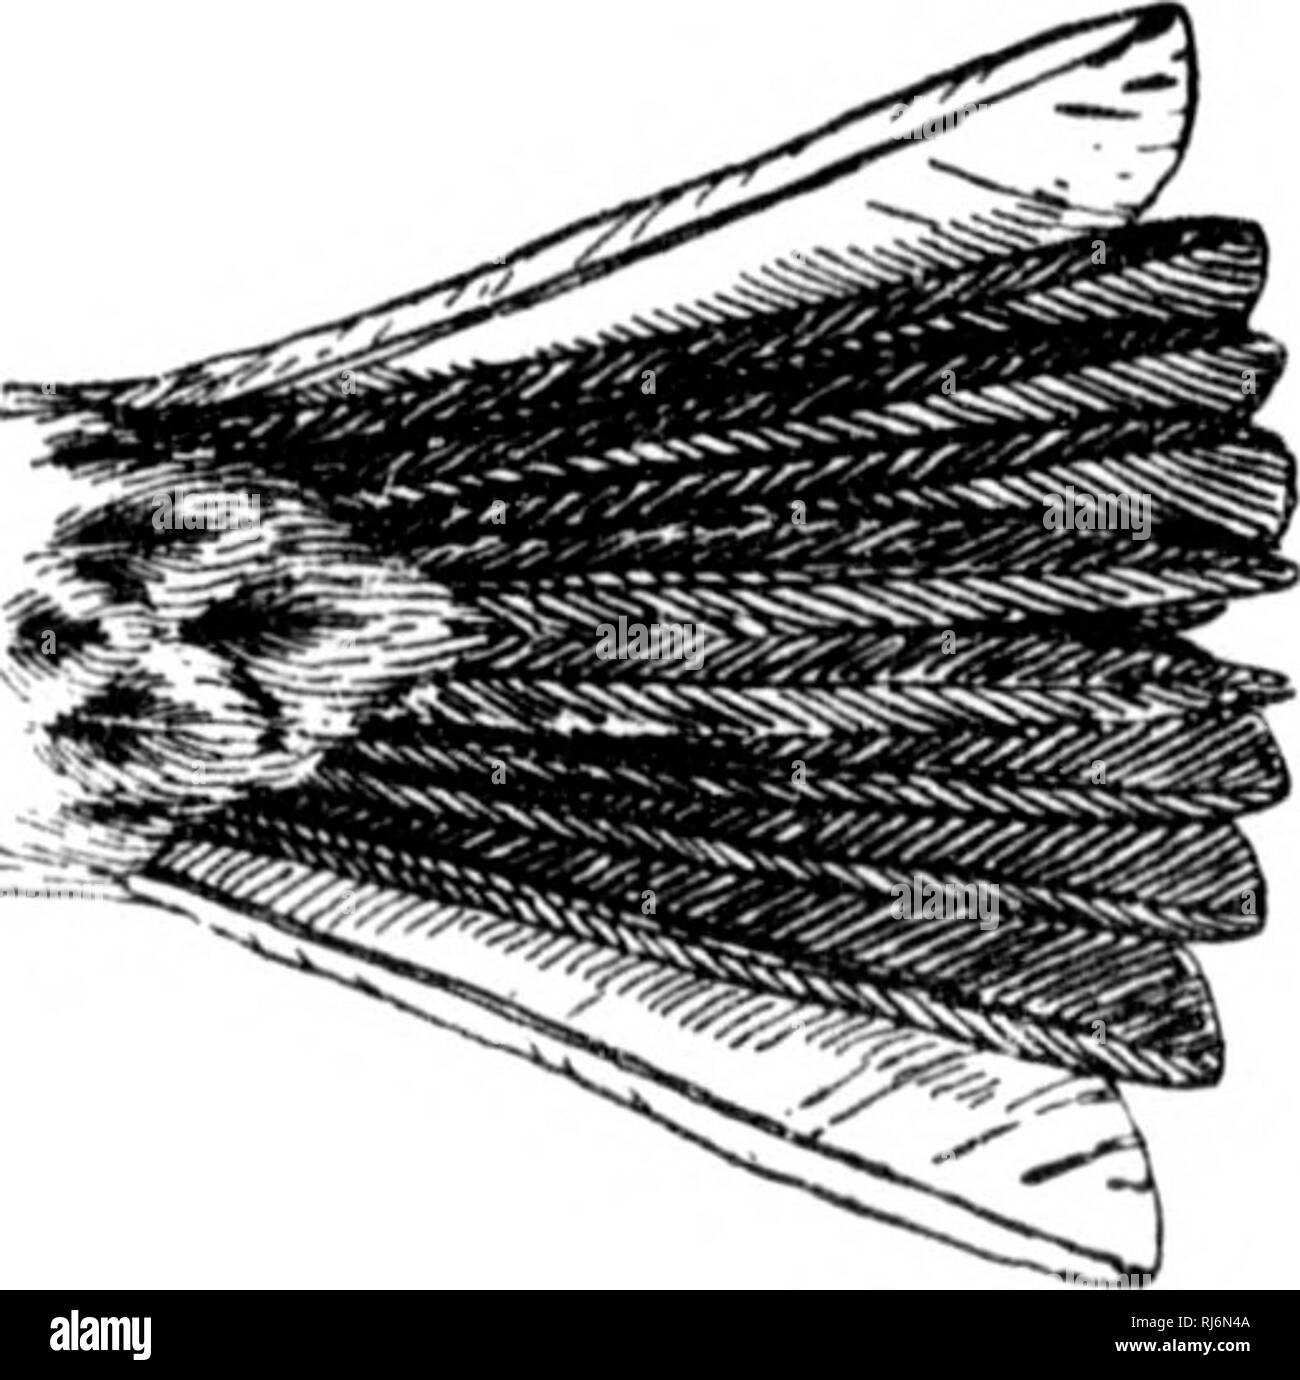 . Gli uccelli del Nord America orientale noto verificarsi ad est del novantesimo meridian [microformati]. Gli uccelli; uccelli; Oiseaux; Oiseaux. &Lt; rown e hack, grigiastro o huffy, venato di hlaok; ishoulder (Locatore win&LT;? Eoverts), nifous J)rown; hreast, striati; j2;reater parte esterna di piuma di coda, compresi web esterna, bianco. Vesper Sparrow. Bay-winged Bunting. Erba Finch. Pi localizza f/ra))iinpit!i. Vedere n. 40S. Corona e indietro, slaty marrone o opaco marrone rufous ; le natiche e la parte superiore del sur- faccia del timoniere, luce rufous marrone; unchn-parti, wliite, lieavily venato anil avvistato su hreast e sui lati Foto Stock